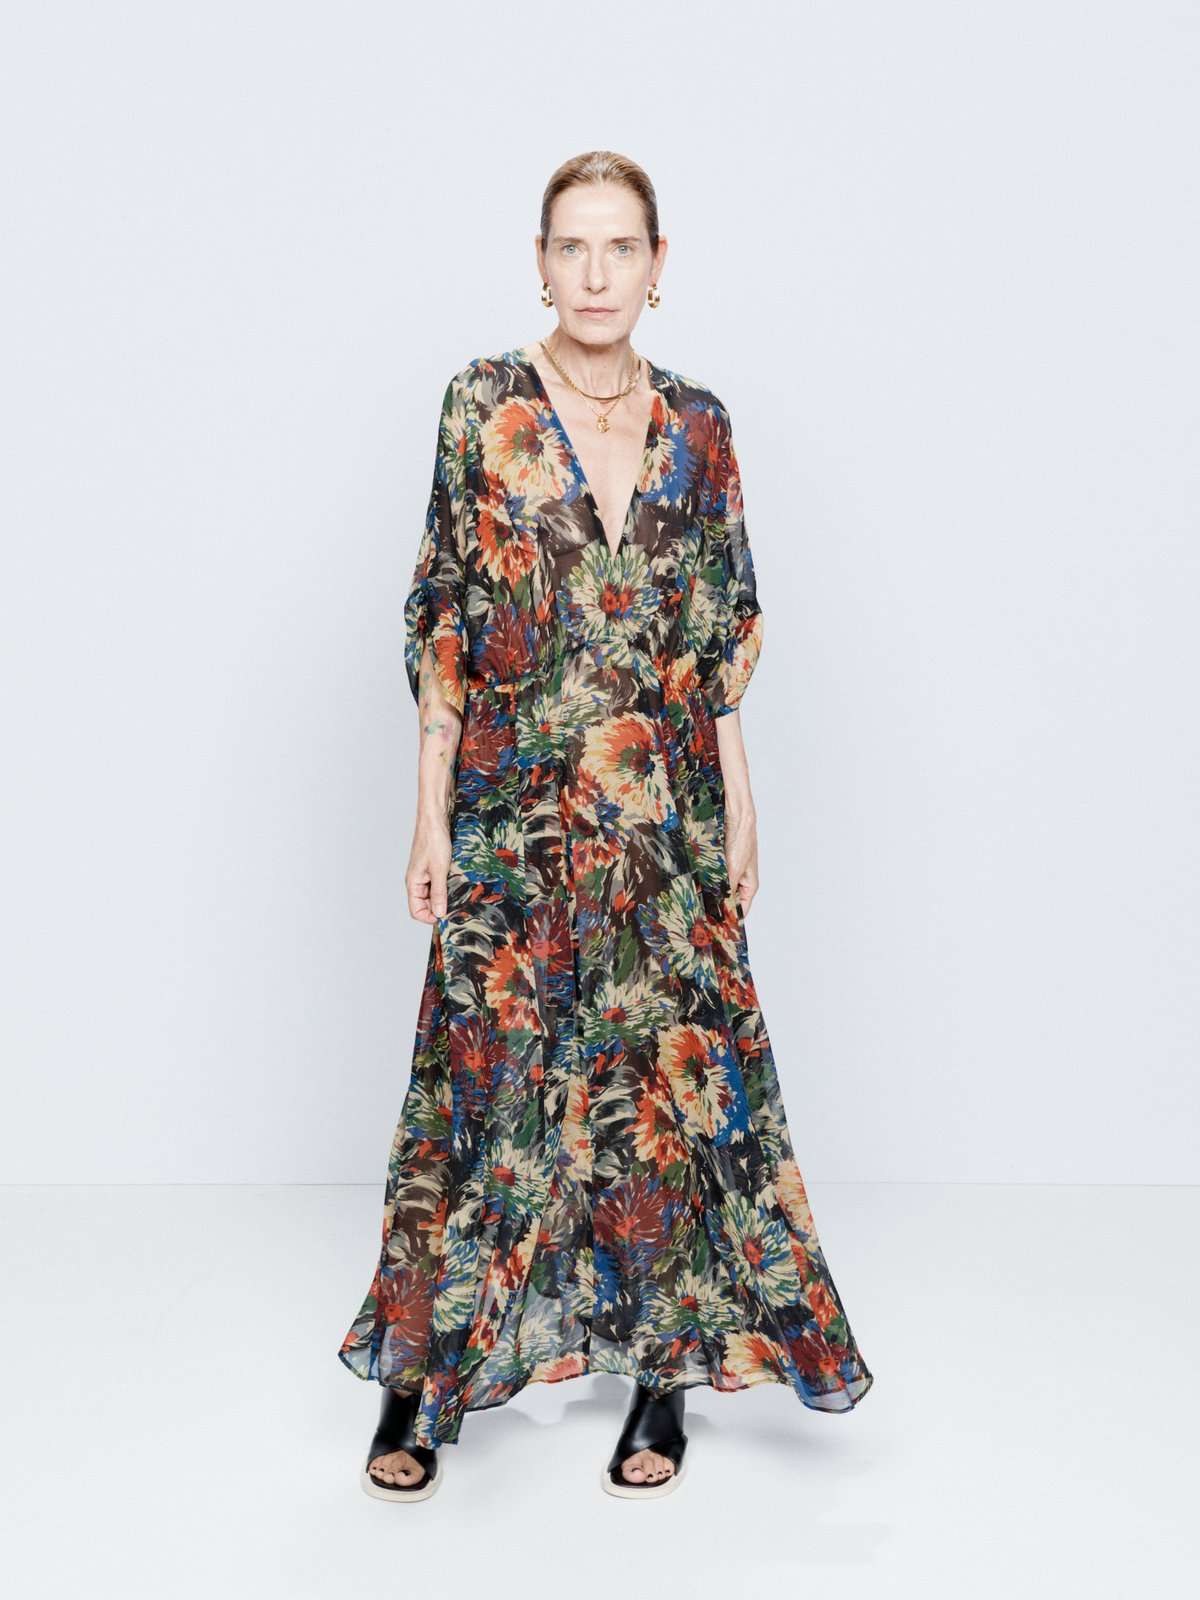 Шелковое платье с принтом хризантем и резинкой на талии